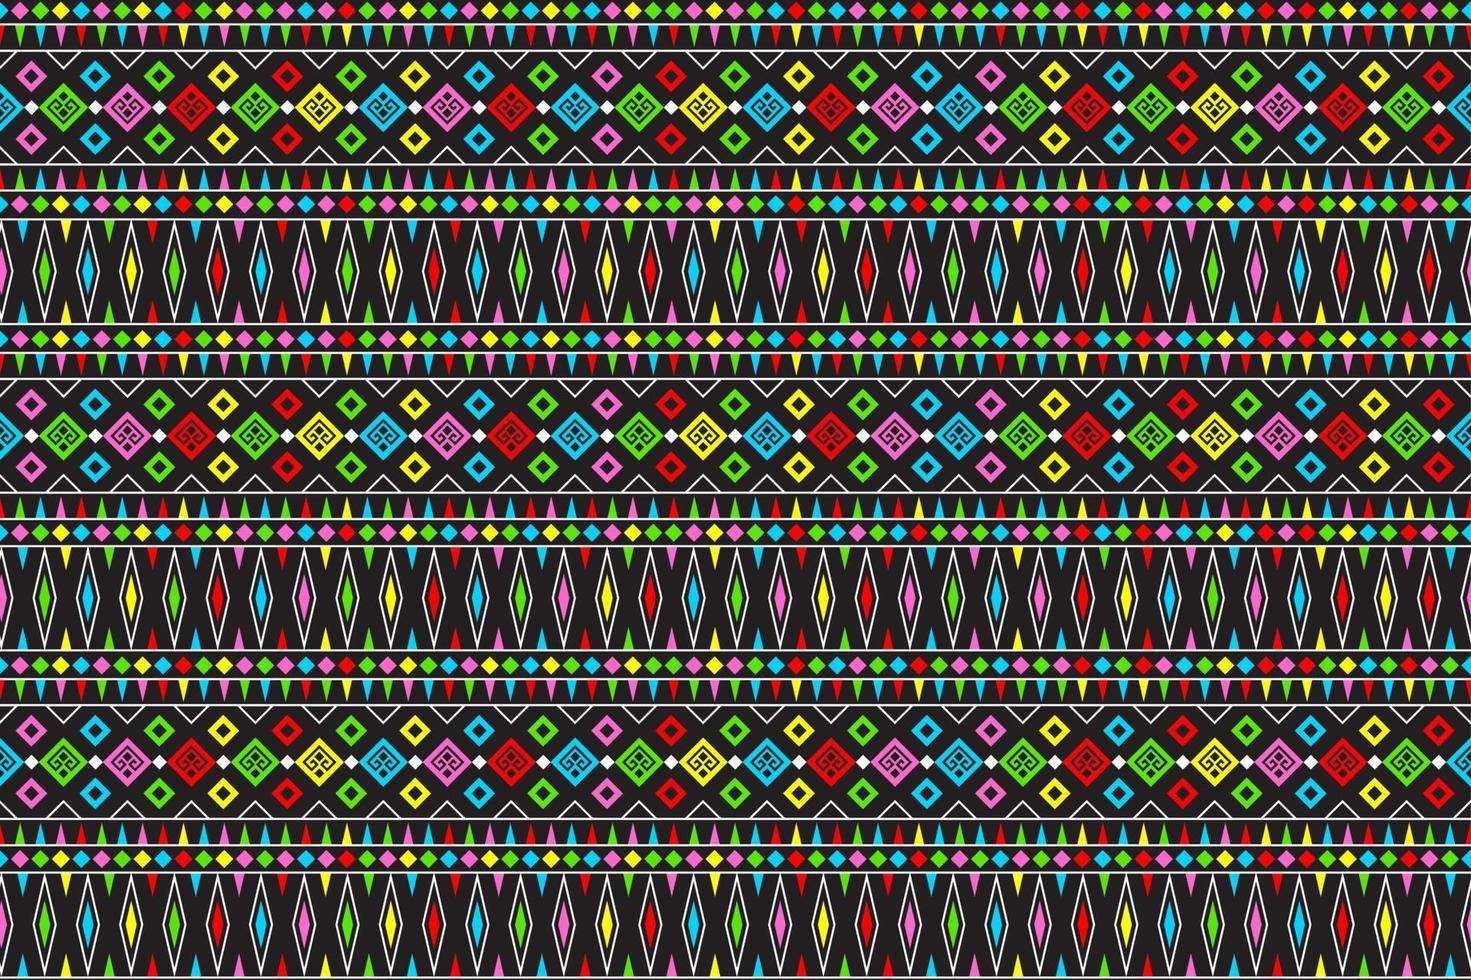 color lindo abstracto geométrico tribal étnico ikat folklore argyle patrón nativo oriental diseño tradicional para fondo, alfombra, papel tapiz, ropa, tela, envoltura, impresión, batik, folk, tejer, vector de rayas